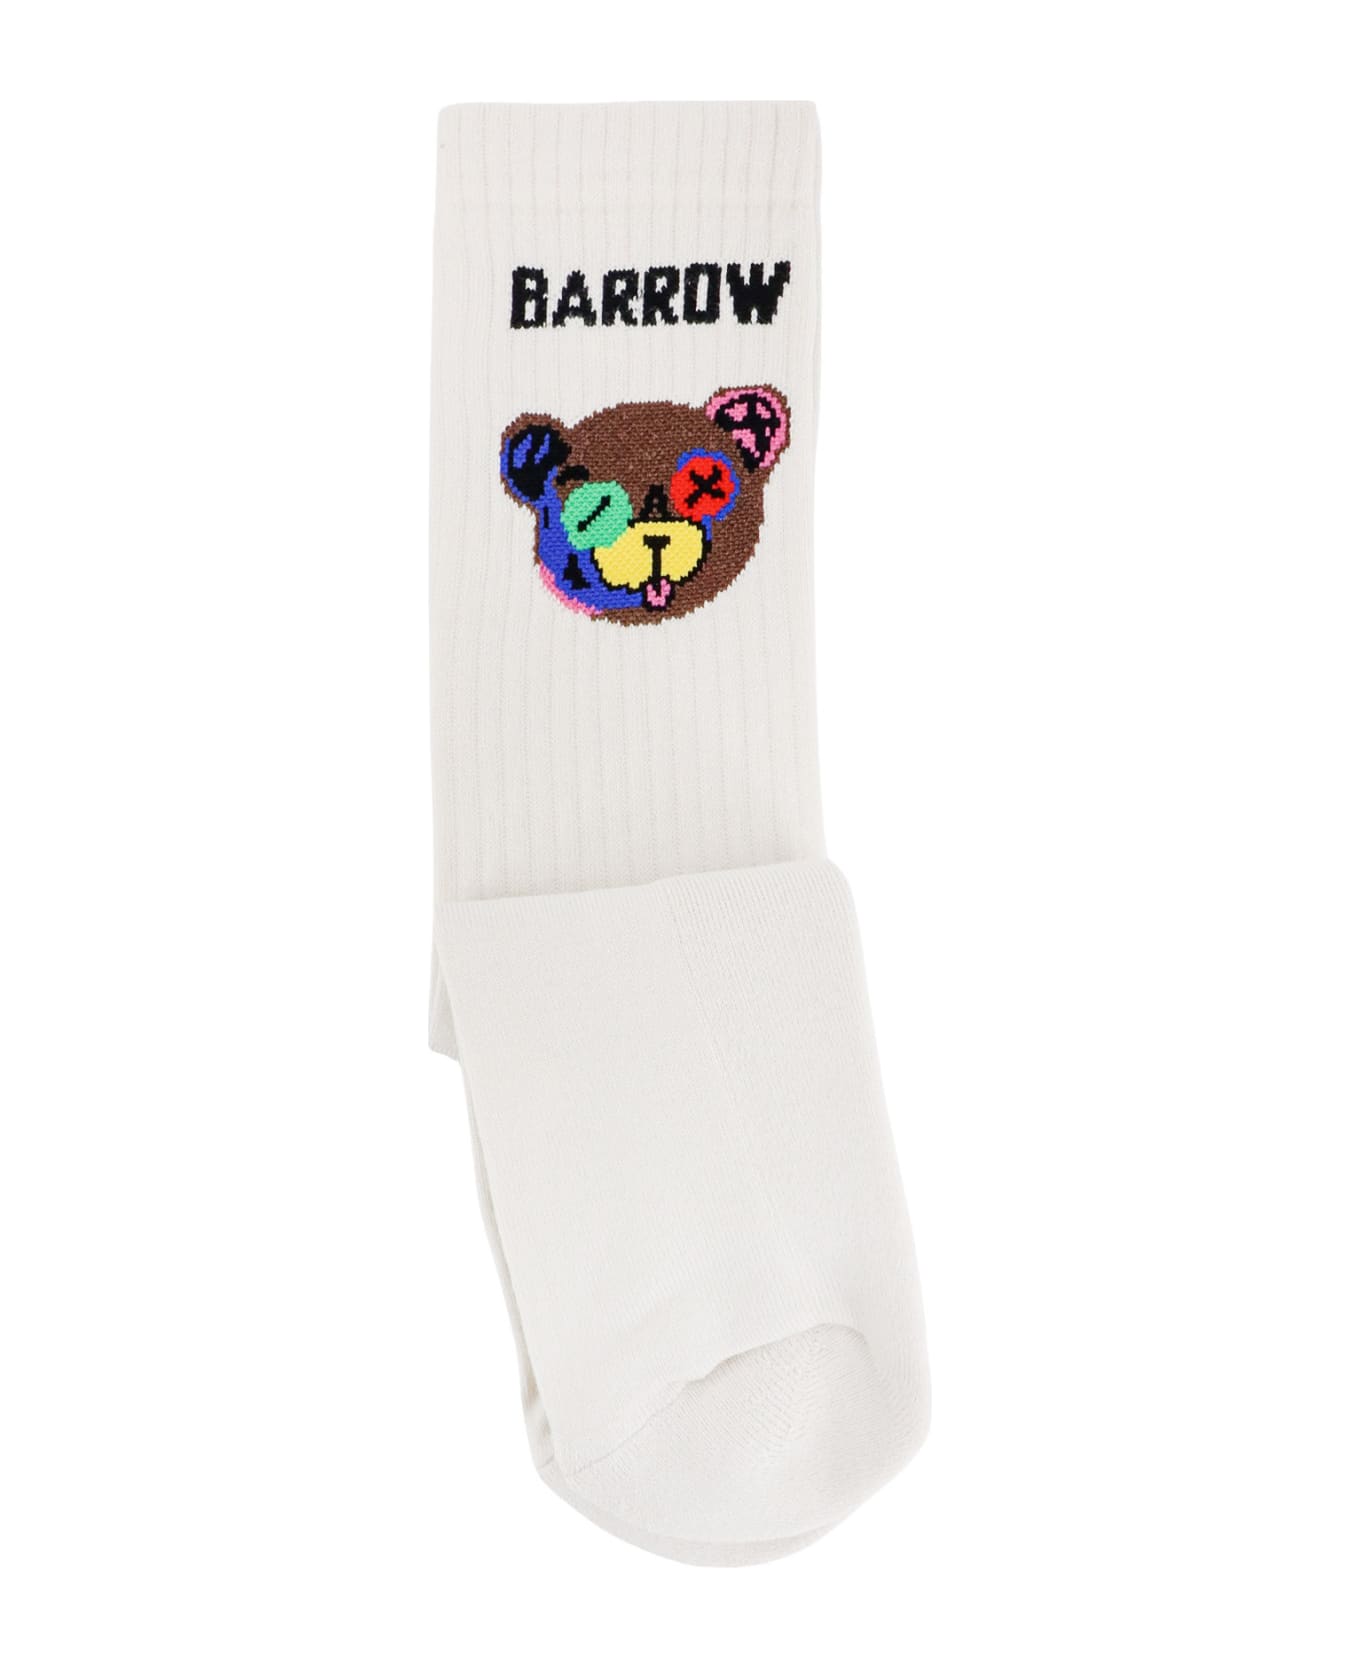 Barrow Socks - Bianco sporco 靴下